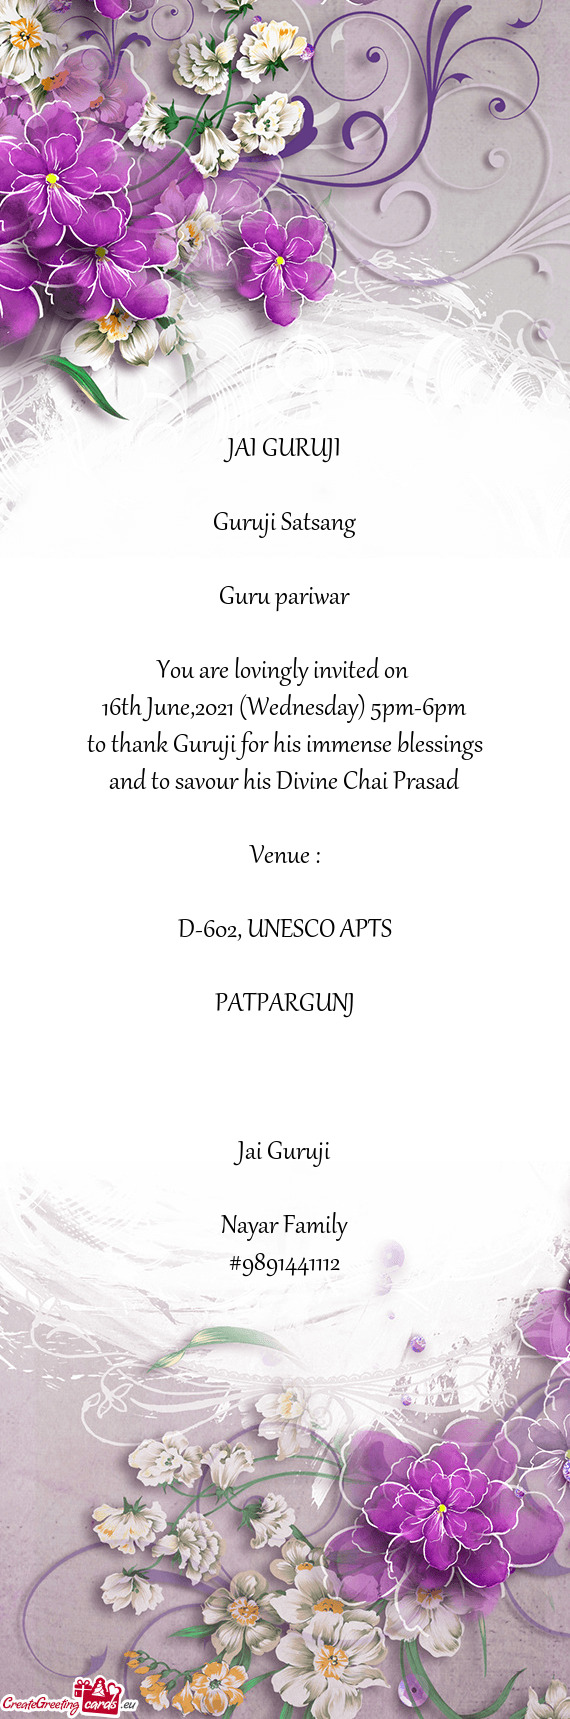 JAI GURUJI
 
 Guruji Satsang
 
 Guru pariwar
 
 You are lovingly invited on 
 16th June